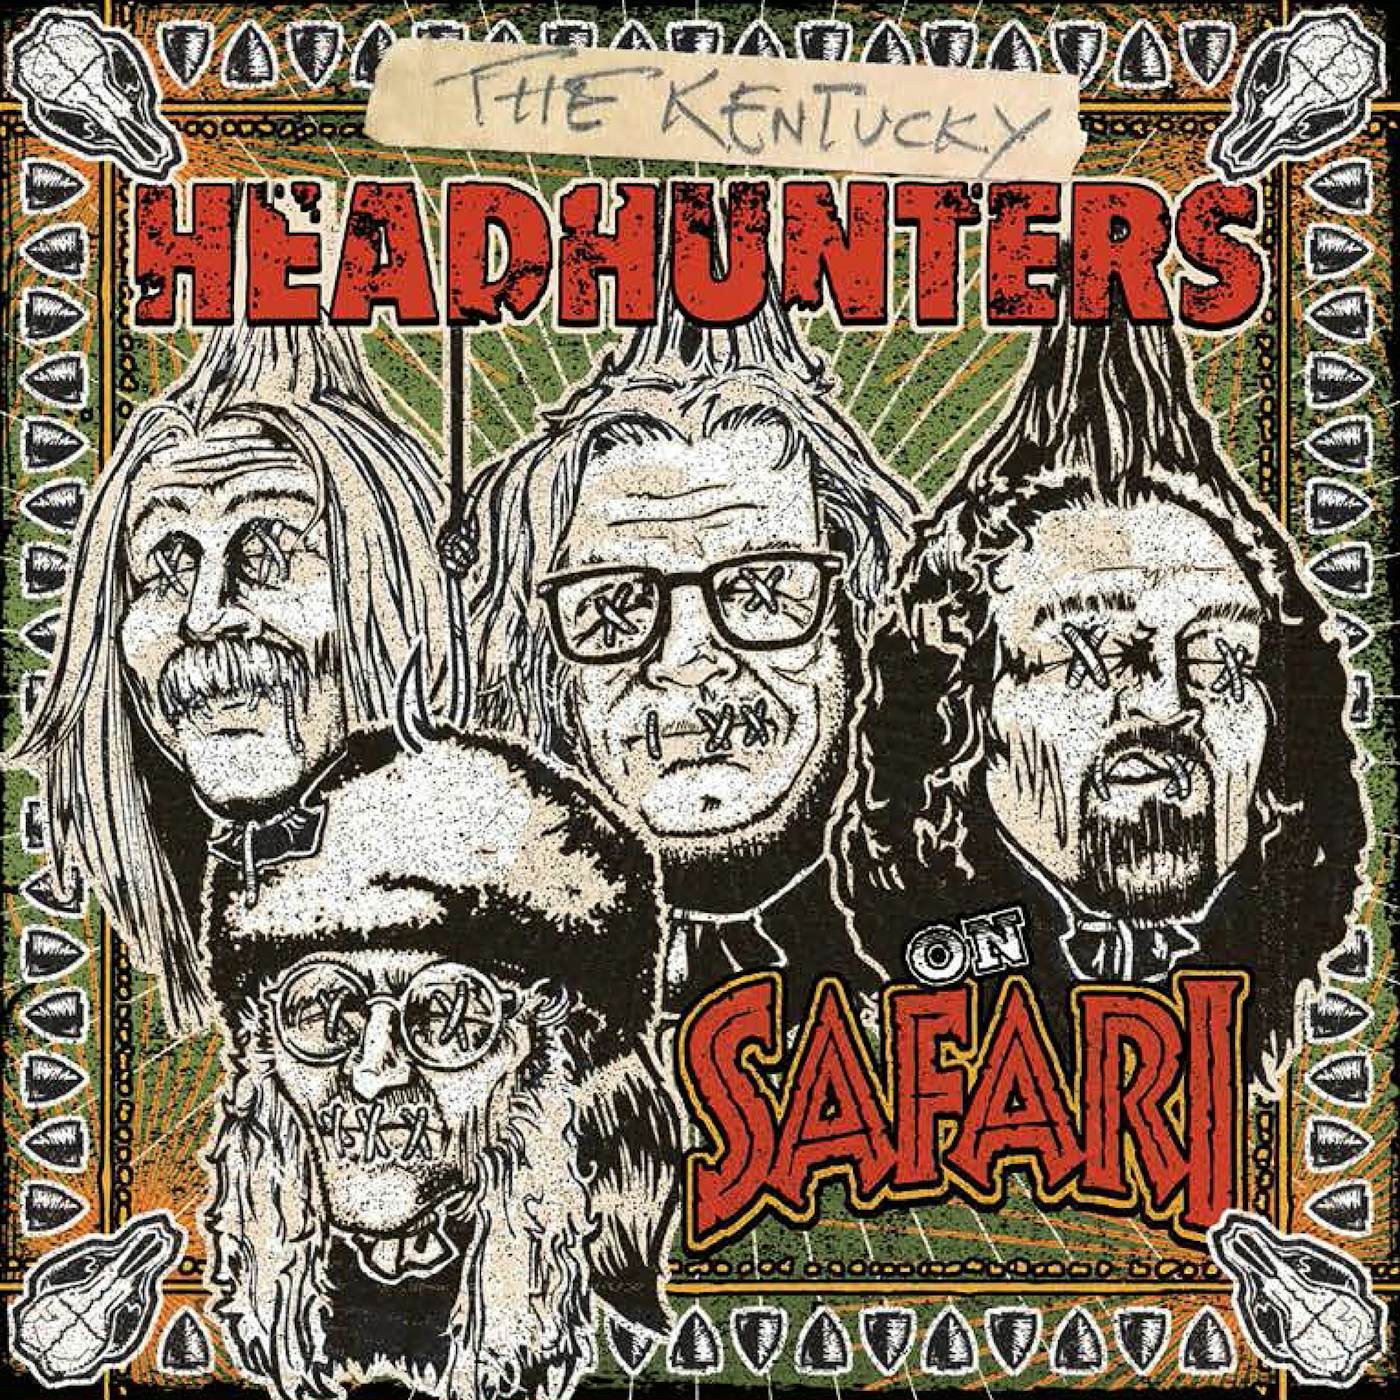 The Kentucky Headhunters On Safari Vinyl Record